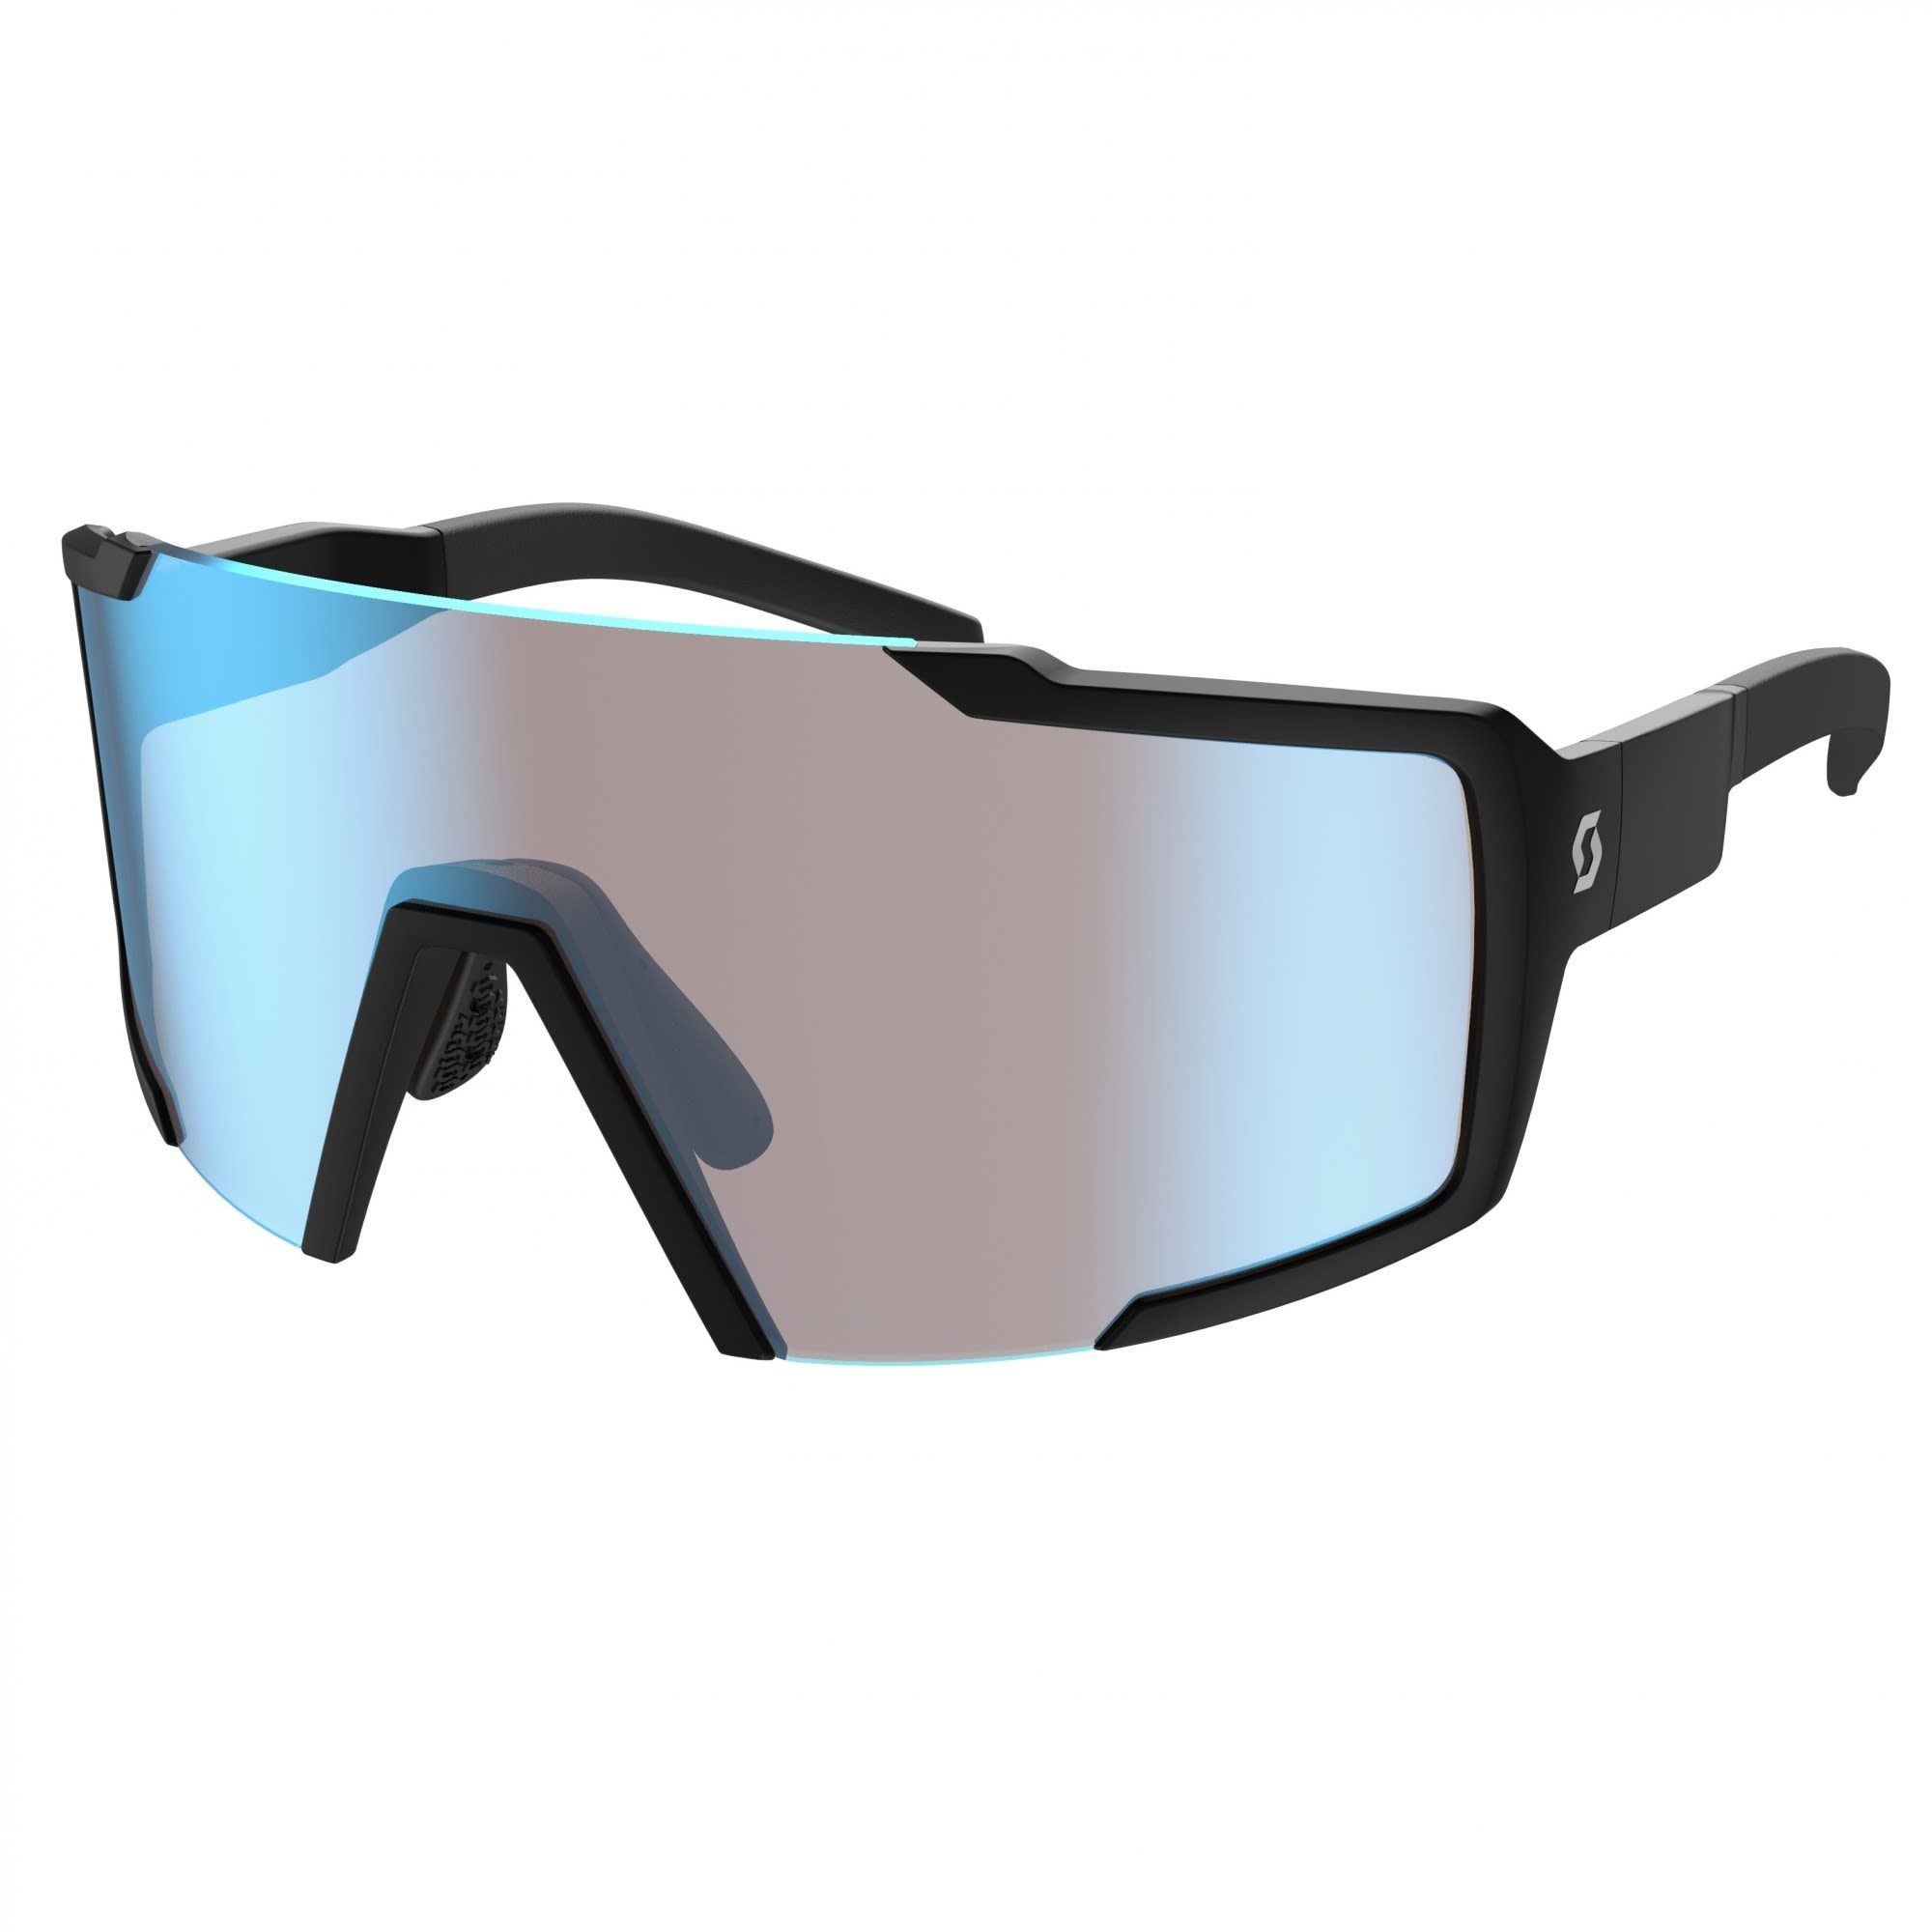 Scott Fahrradbrille Scott Shield Sunglasses Accessoires Black Matt - Blue Chrome Enhancer